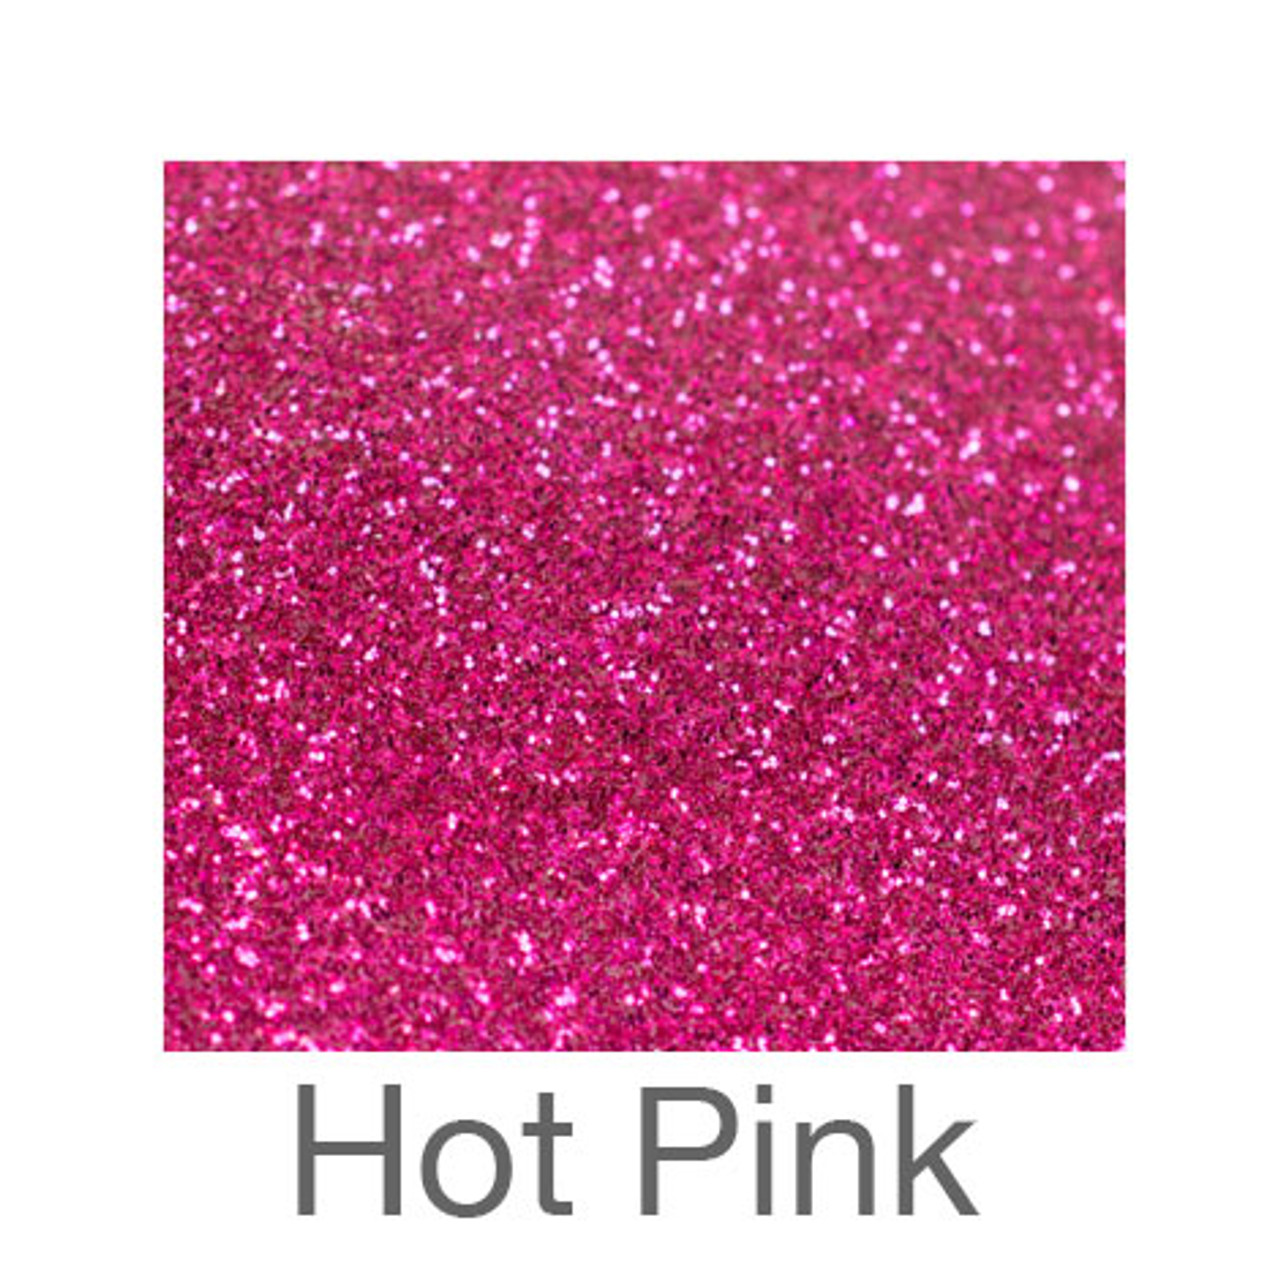 Pink Glitter HTV Vinyl  Gold Glitter Vinyl Rolls - 10 x 5FT